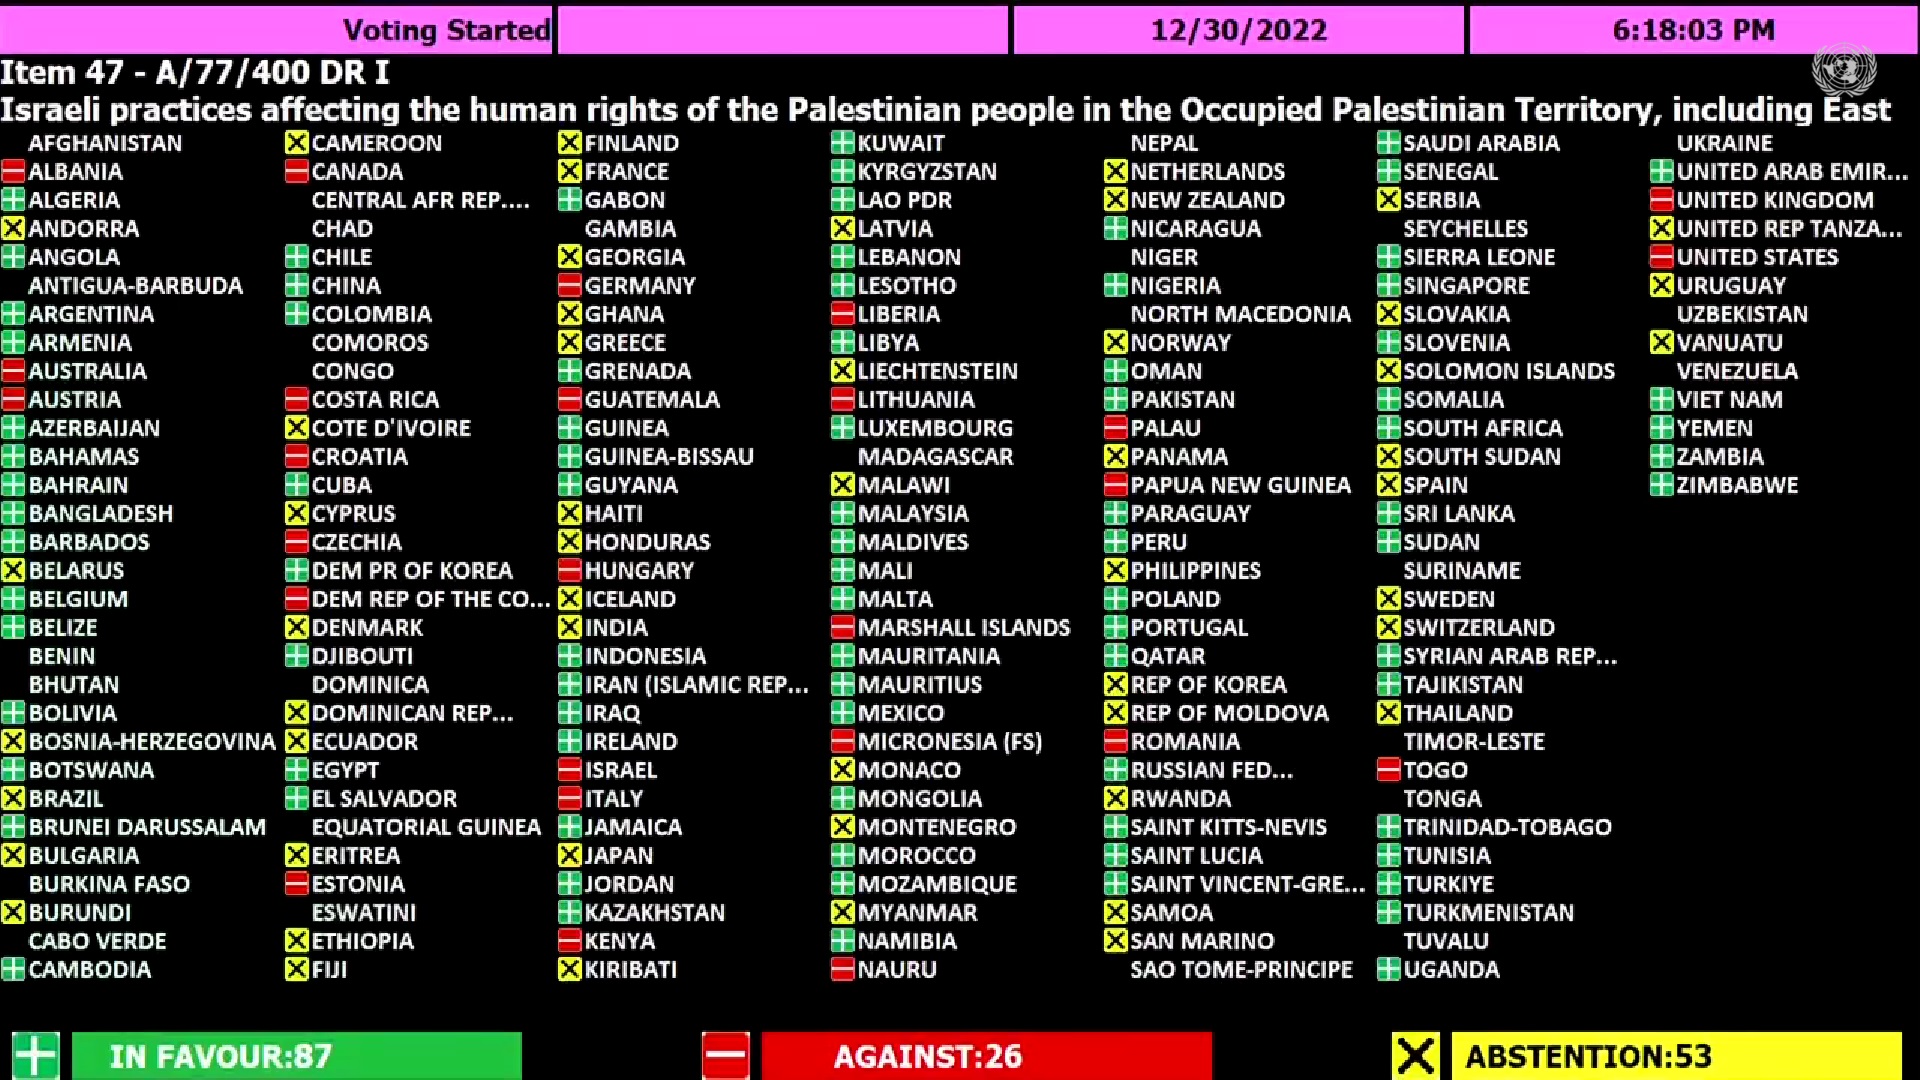 Беларусь воздержалась при голосовании в ООН по резолюции в отношении Израиля